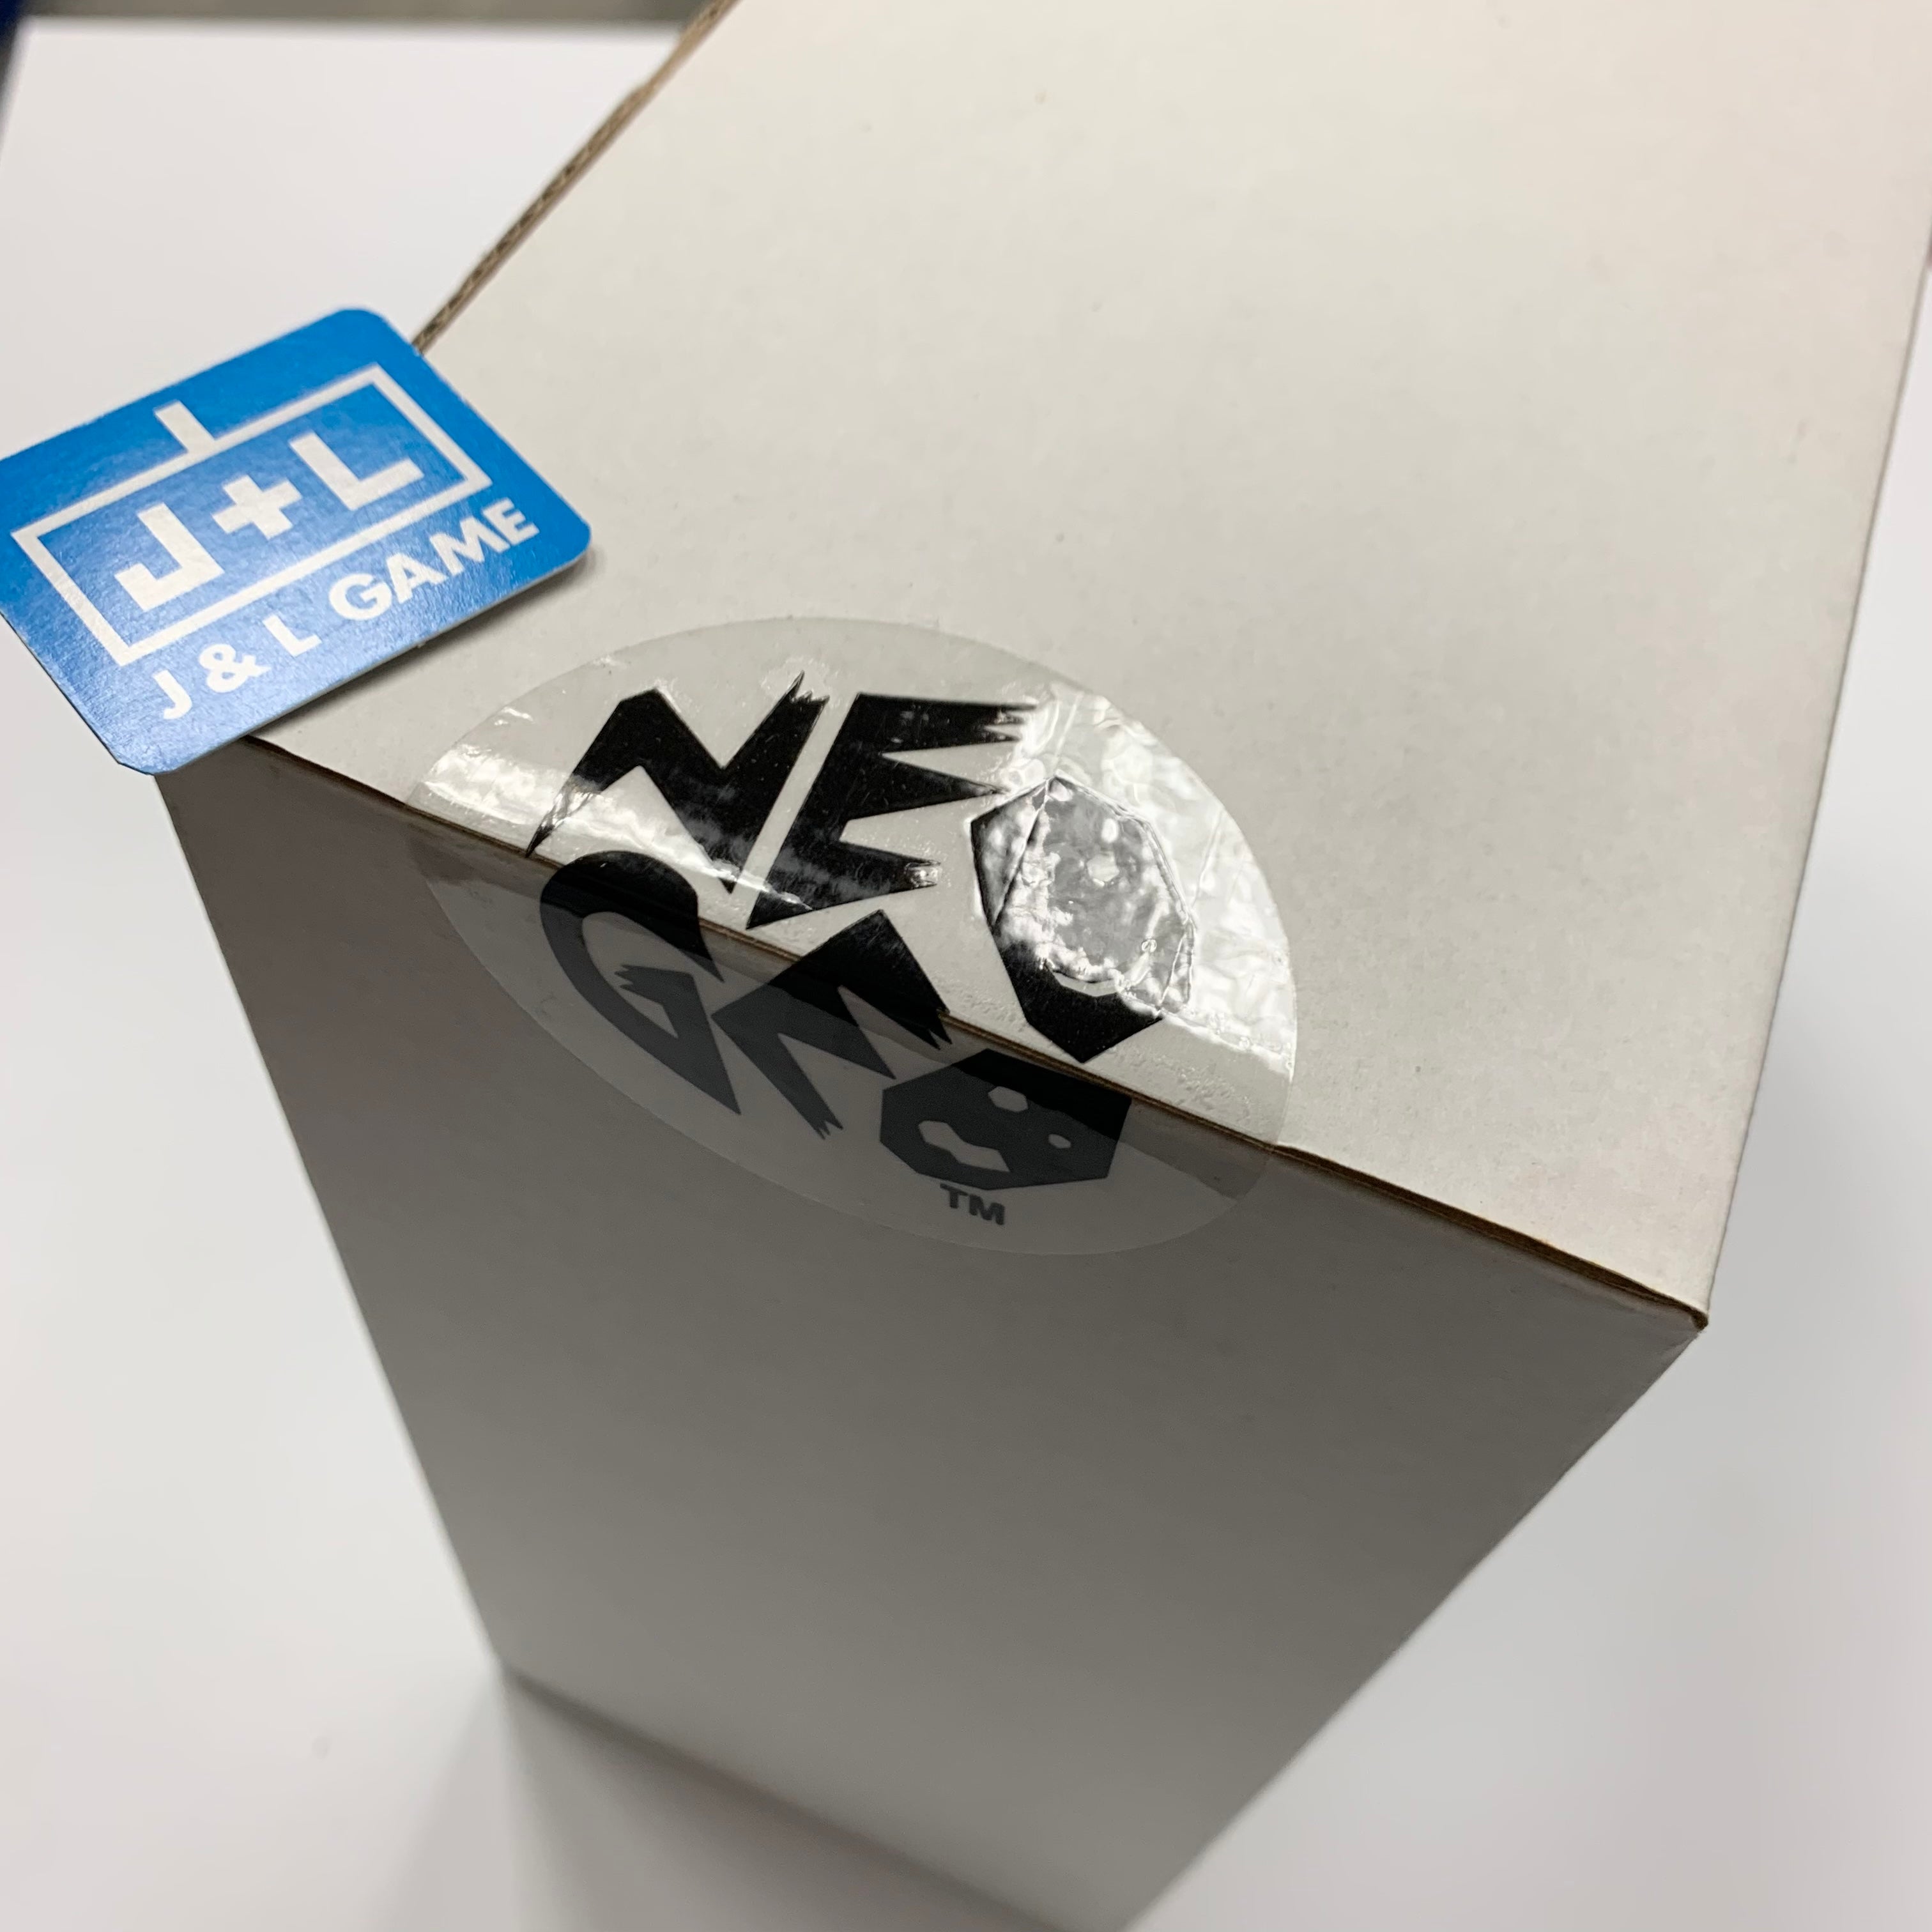 NeoGeo X Arcade Stick - (NGX) NeoGeo X ACCESSORIES NEOGEO X   